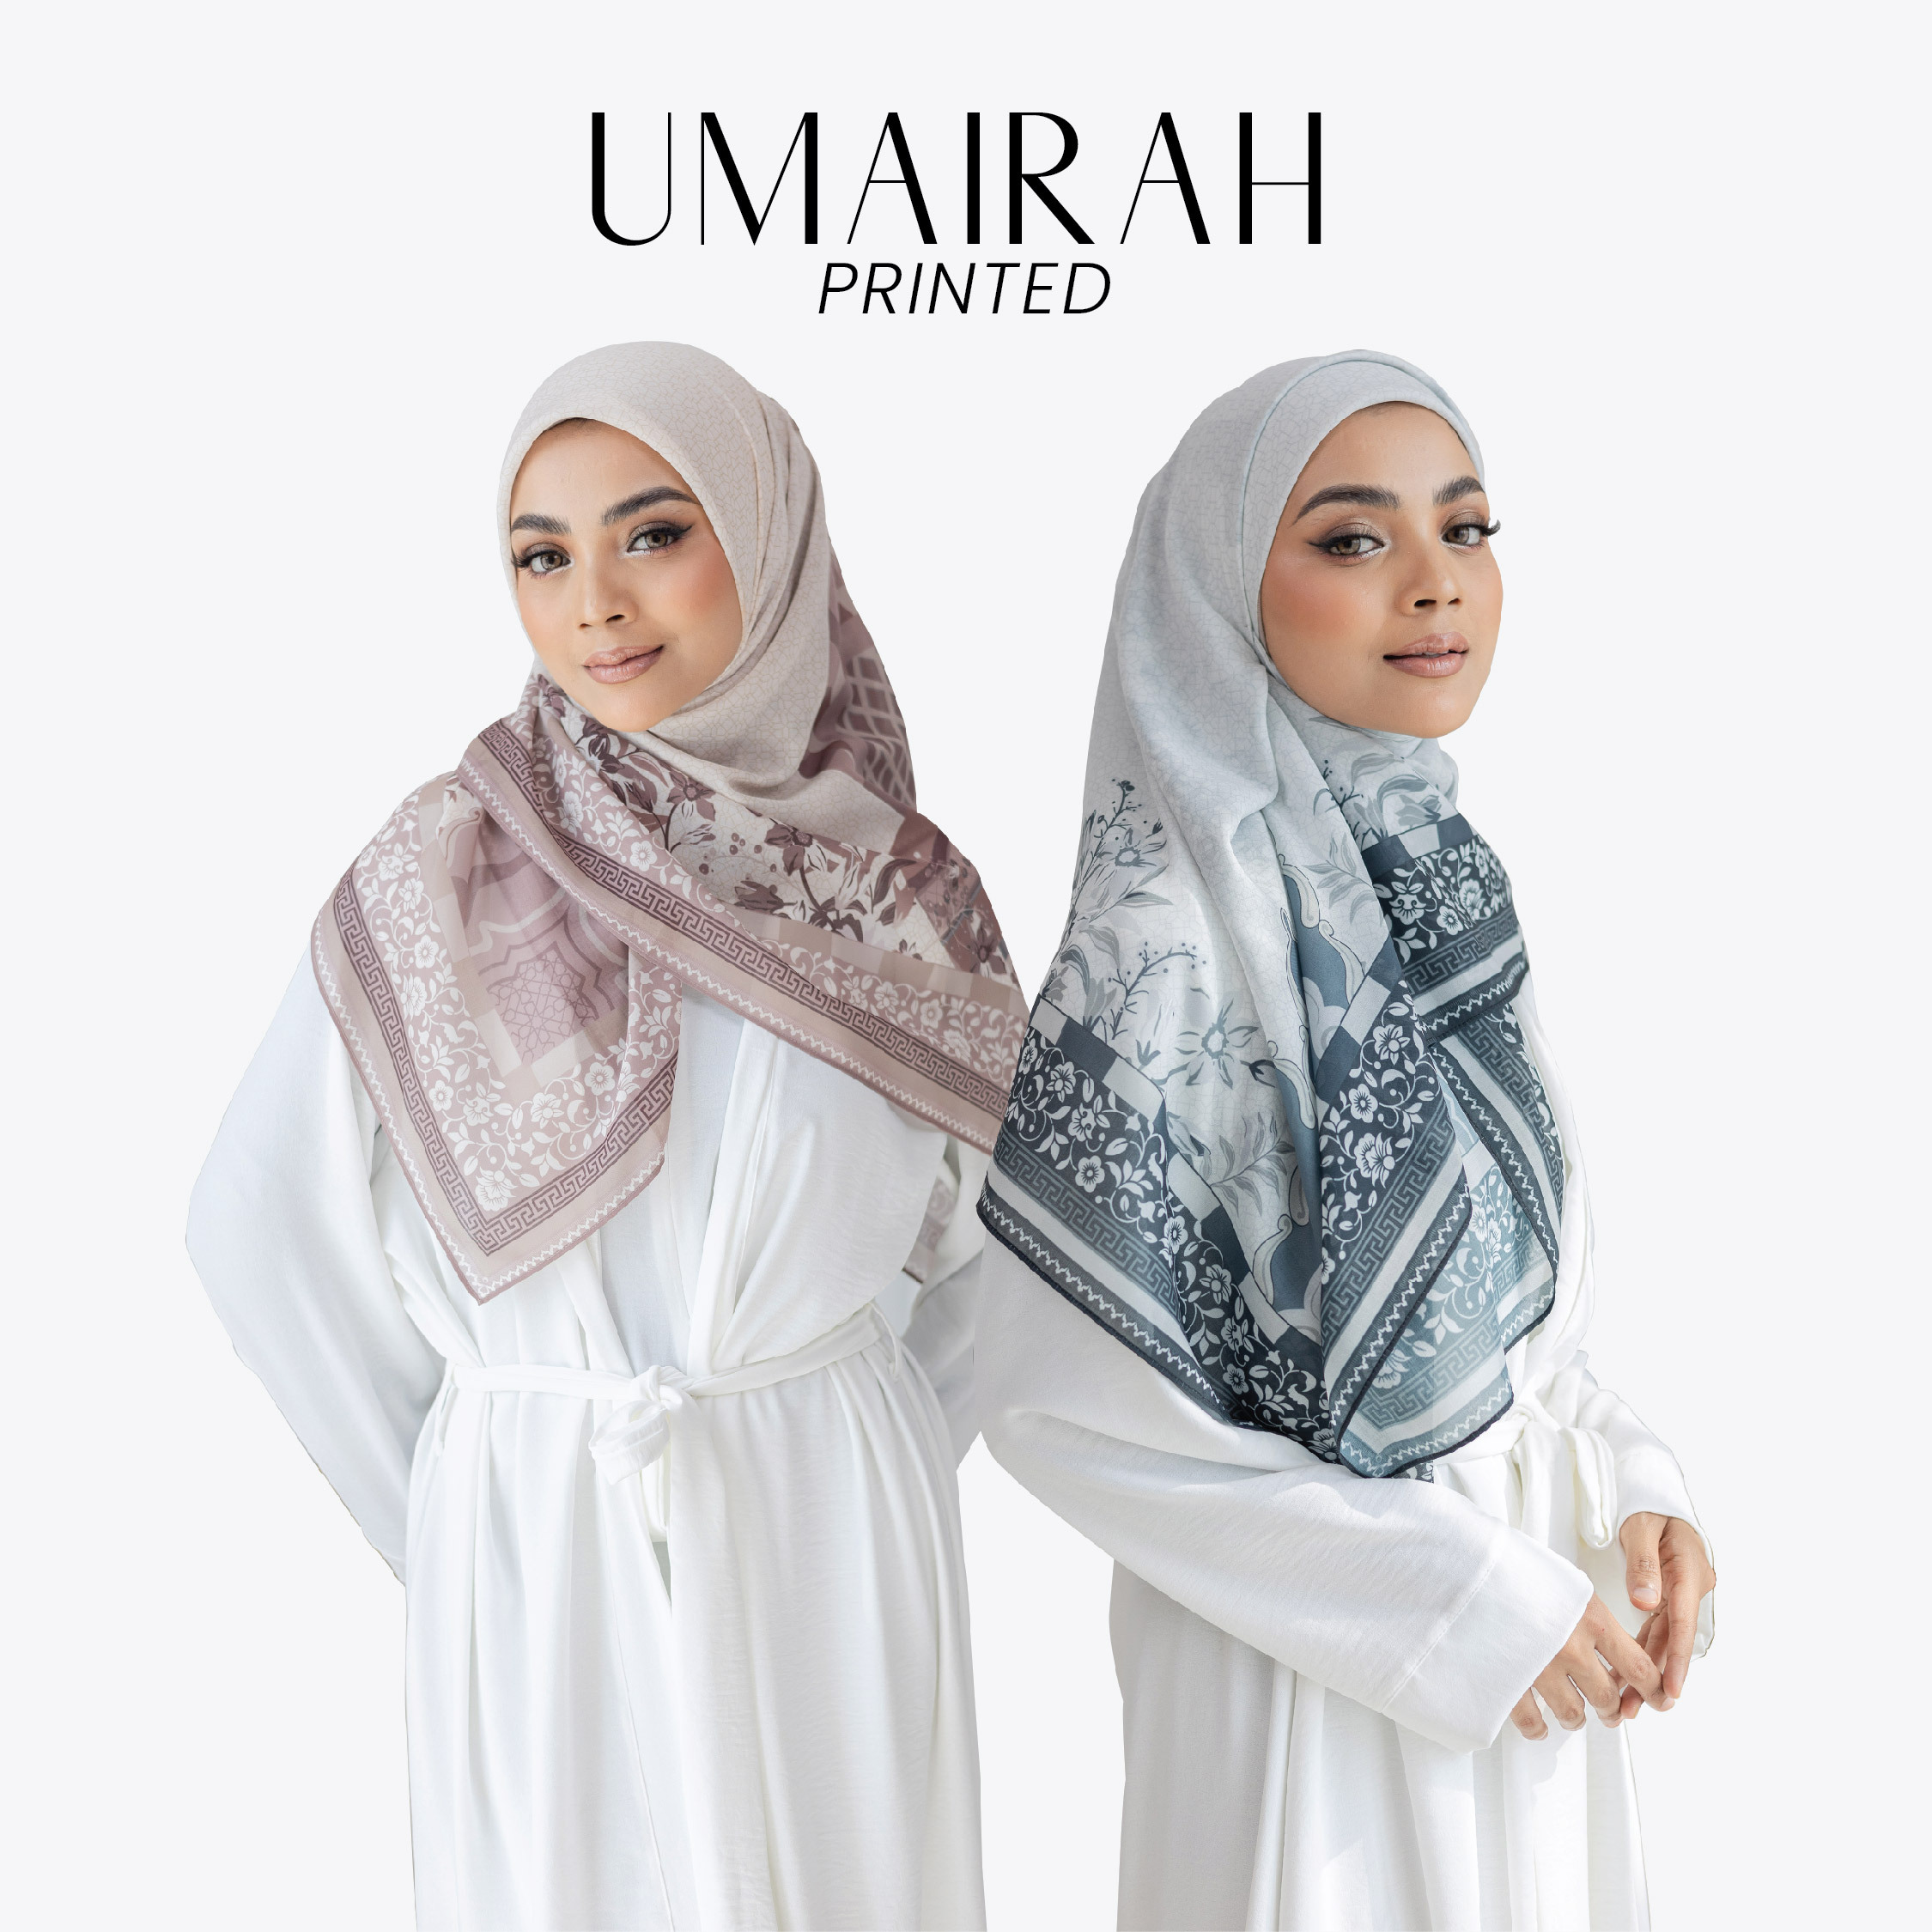 UMAIRAH-01 (2)